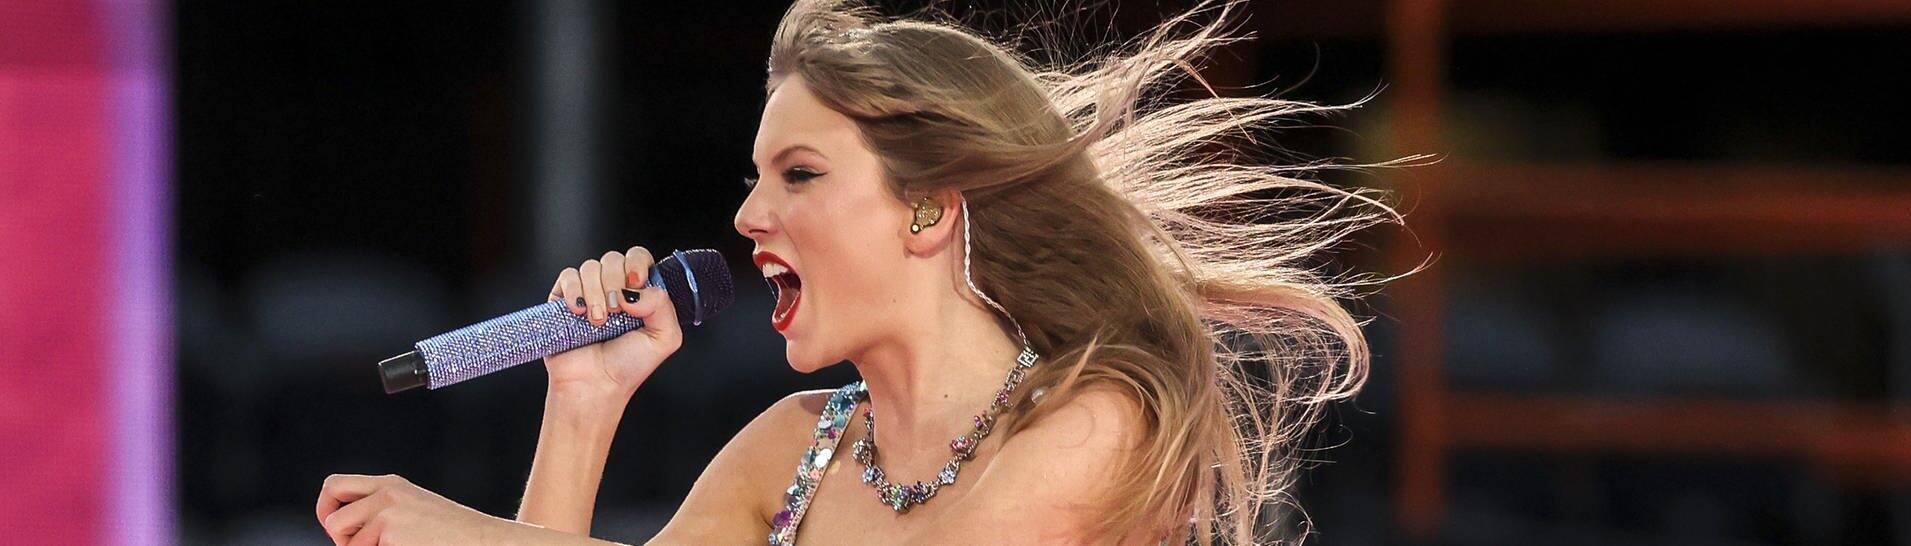 Taylor Swift tritt in Chicago im Rahmen der Eras Tour auf. Sie steht auf der Bühne in einem glitzernden kurzen Kleid. (Foto: IMAGO, picture alliance/dpa/TNS via ZUMA Press Wire | Shanna Madison)